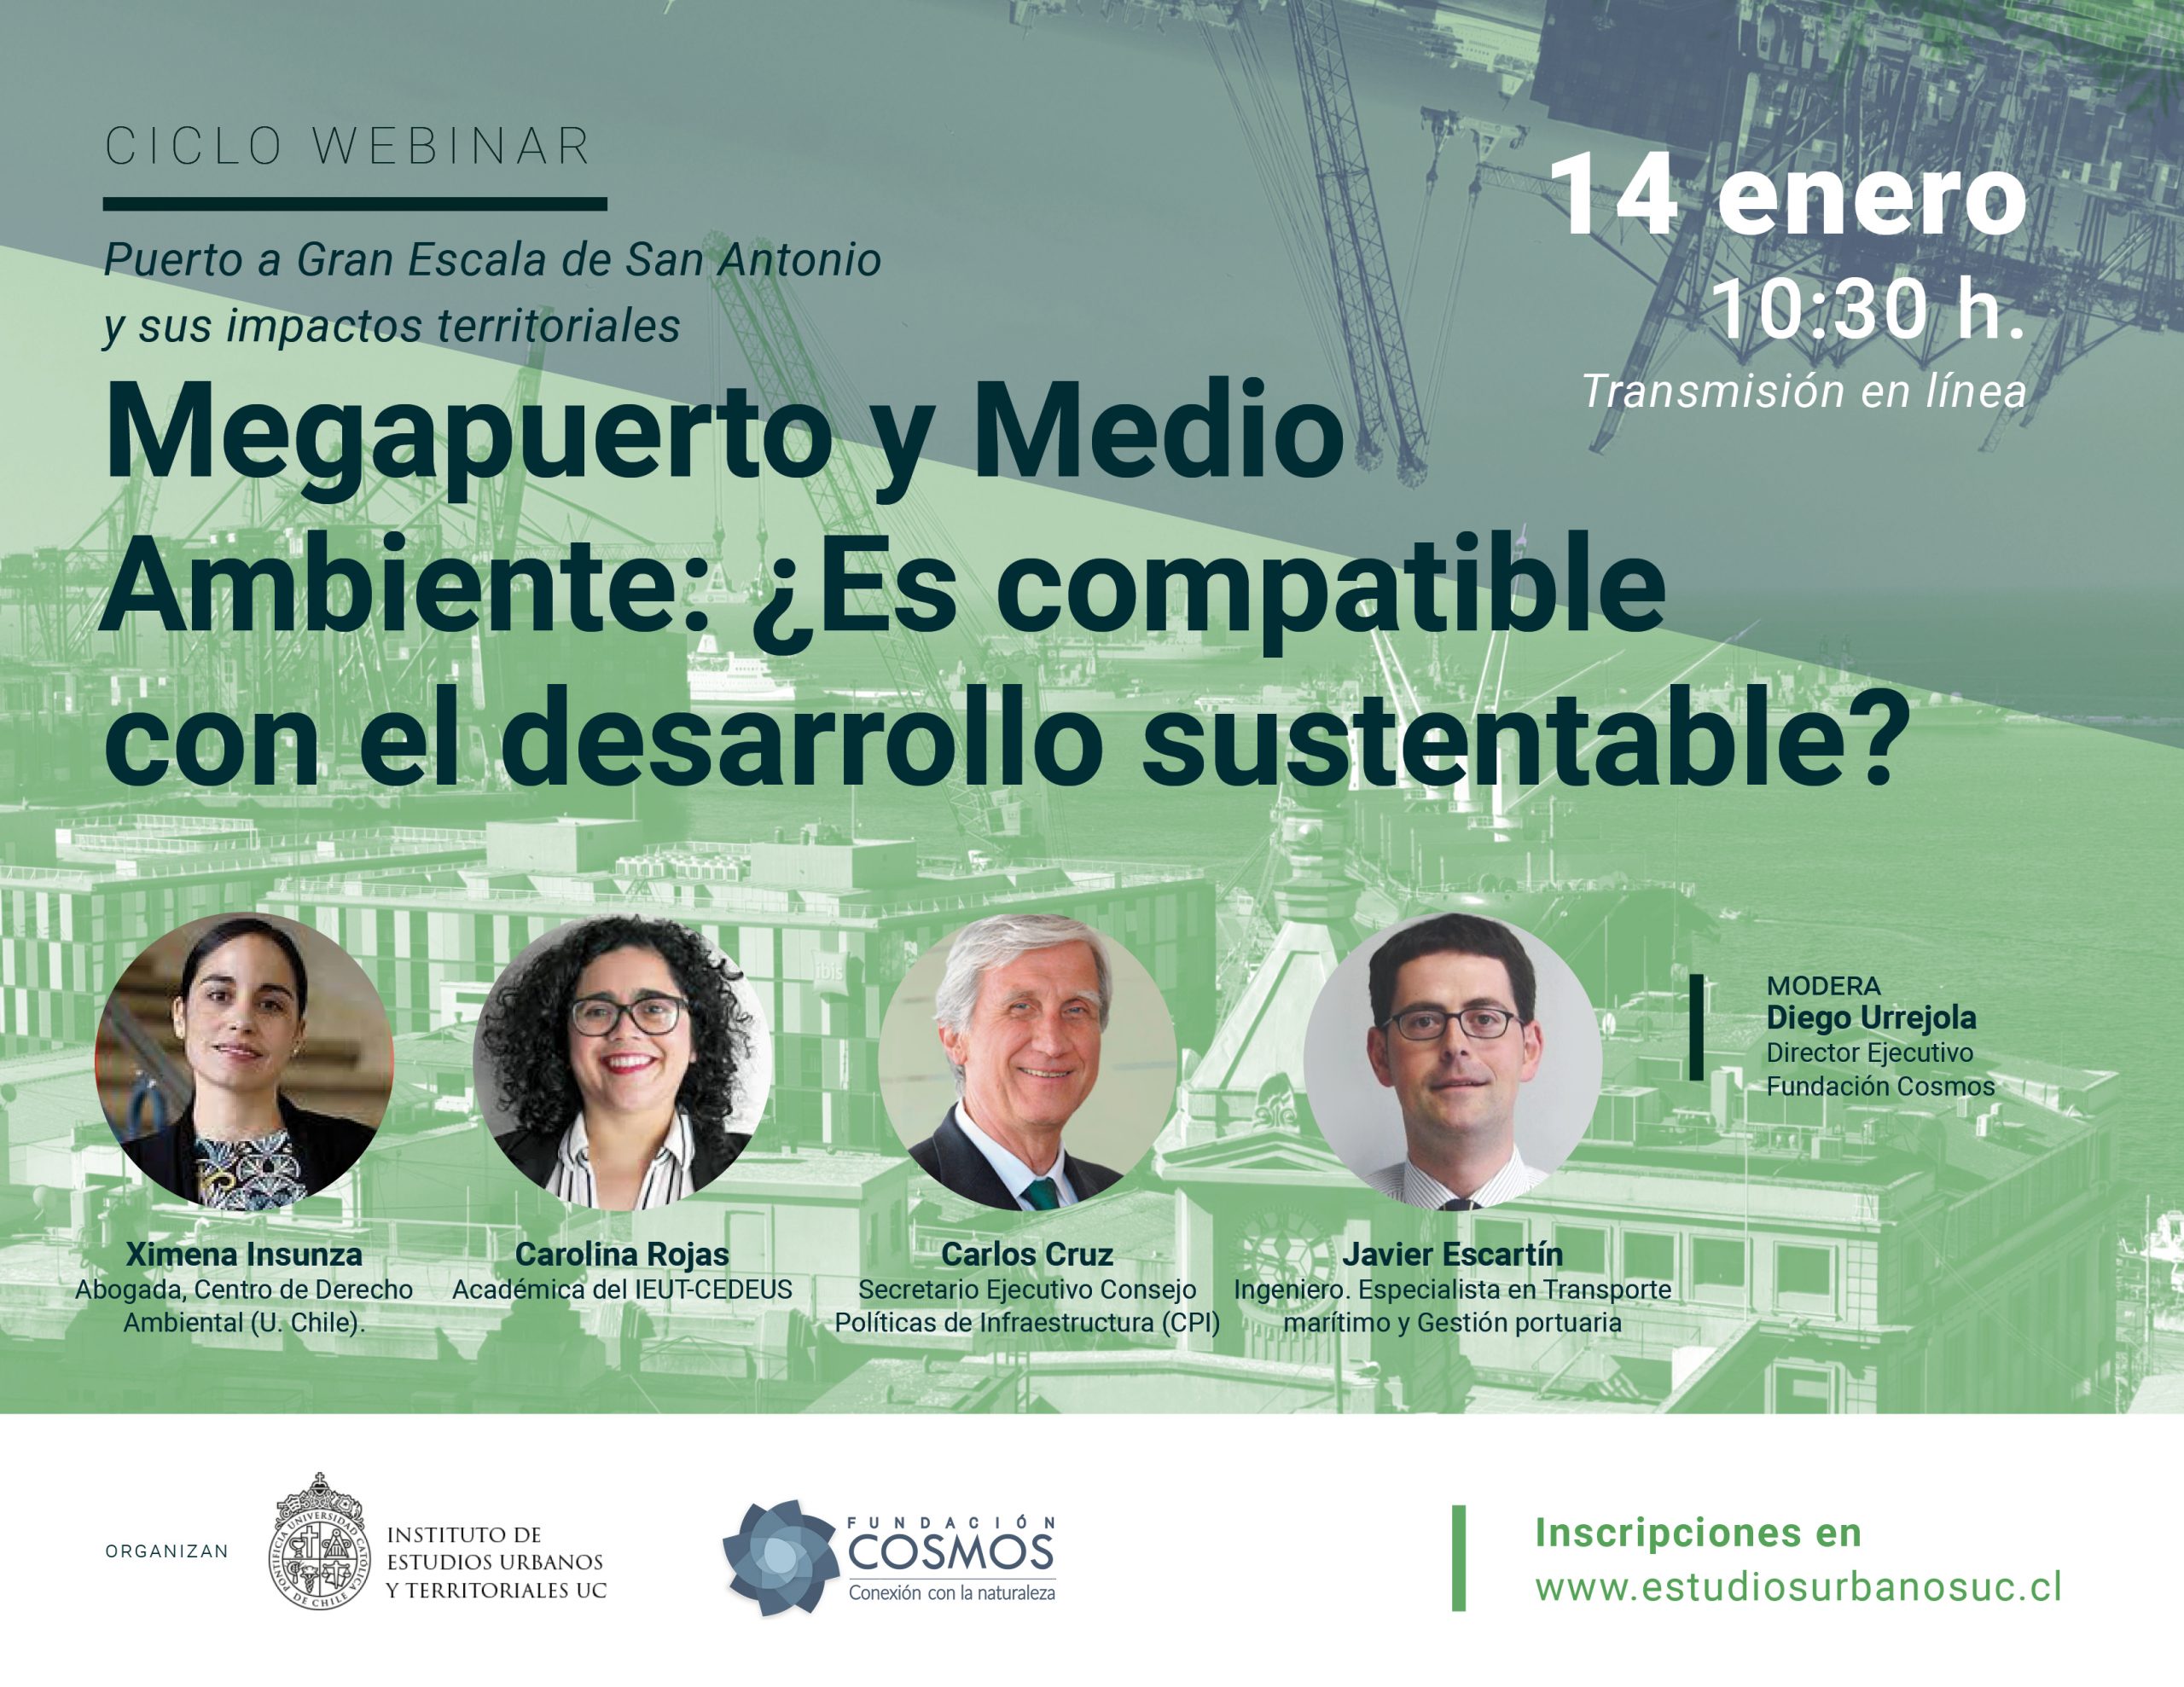 Ciclo webinar | Megapuerto y Medio Ambiente: ¿Es compatible con el desarrollo sustentable?